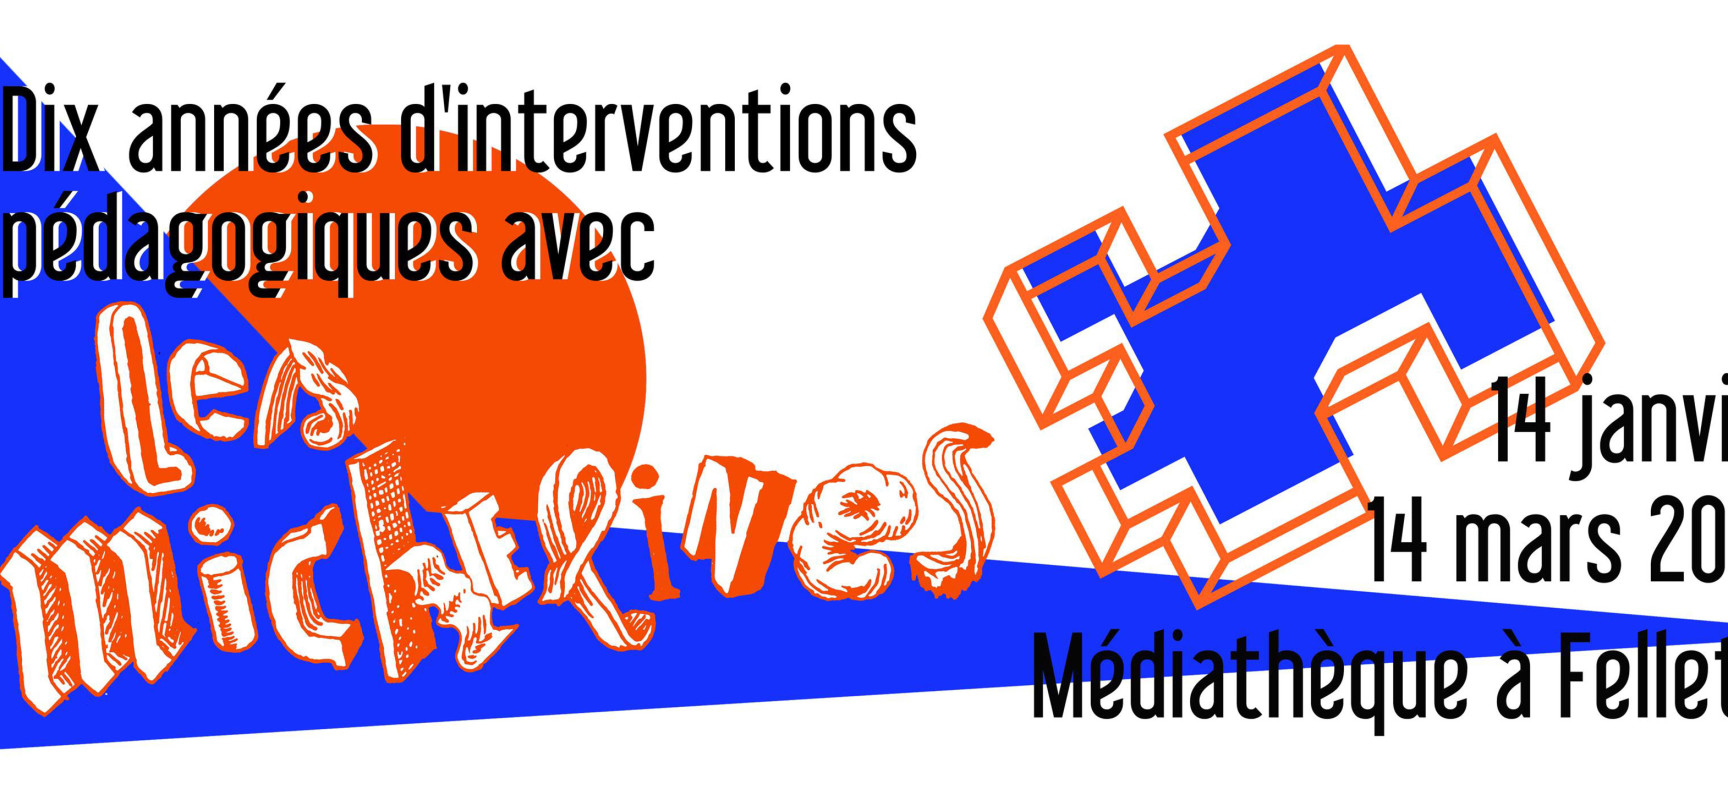 [Médiathèque] Exposition – « Dix années d’interventions pédagogiques avec l’Atelier Les Michelines » – Felletin – du 14 janvier au 14 mars 2023